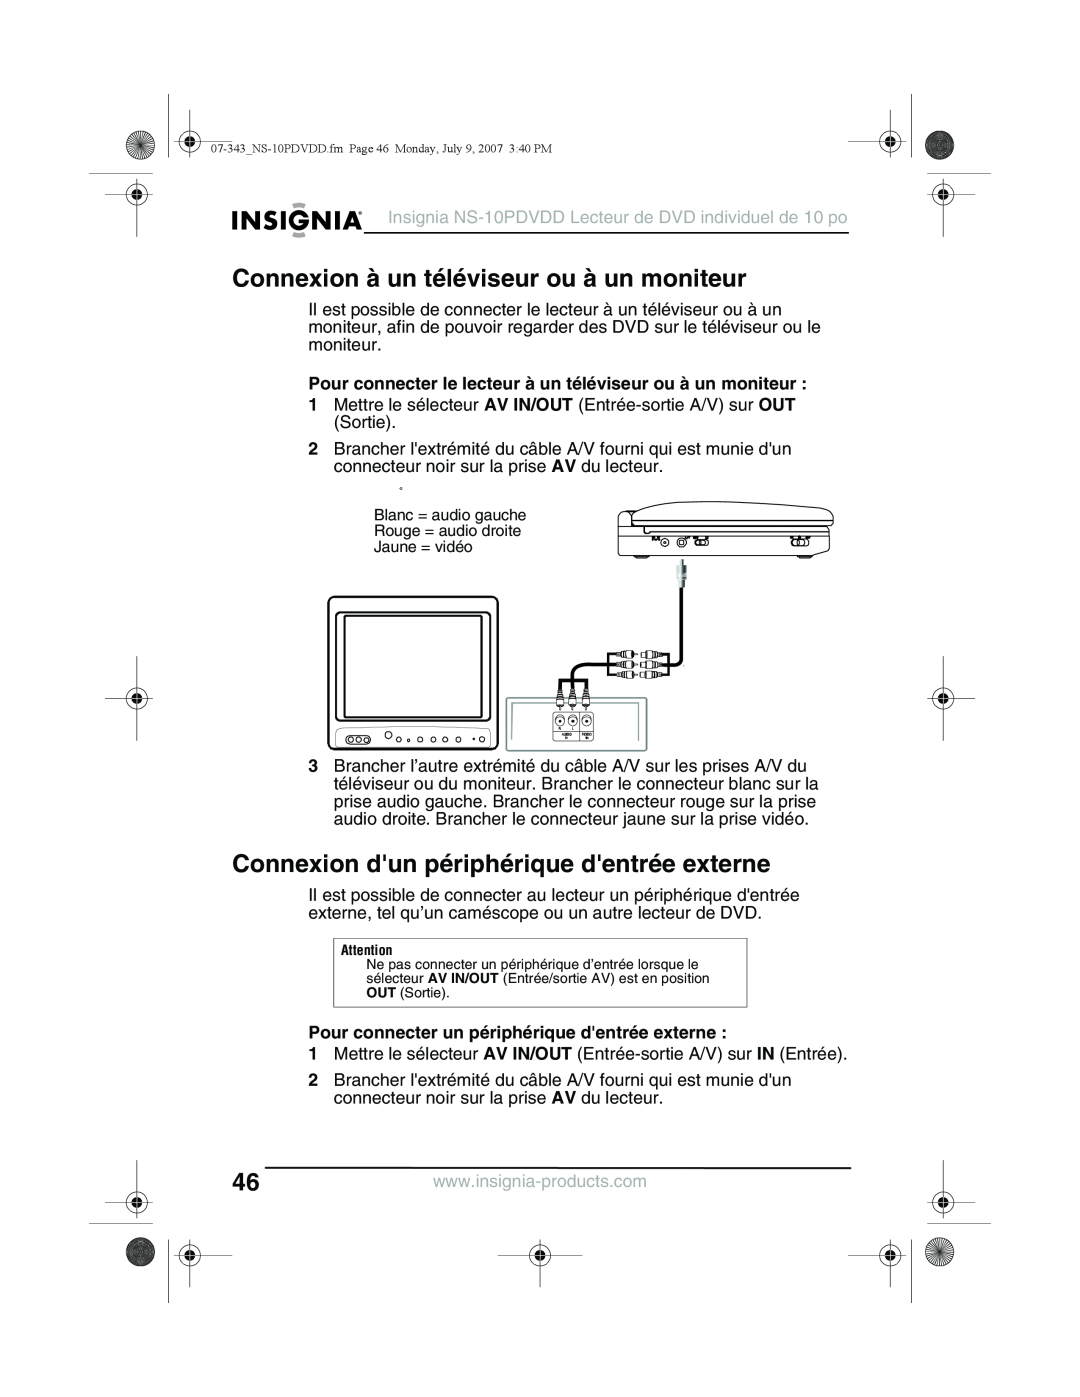 Insignia NS-10PDVDD manual Connexion à un téléviseur ou à un moniteur, Connexion dun périphérique dentrée externe 